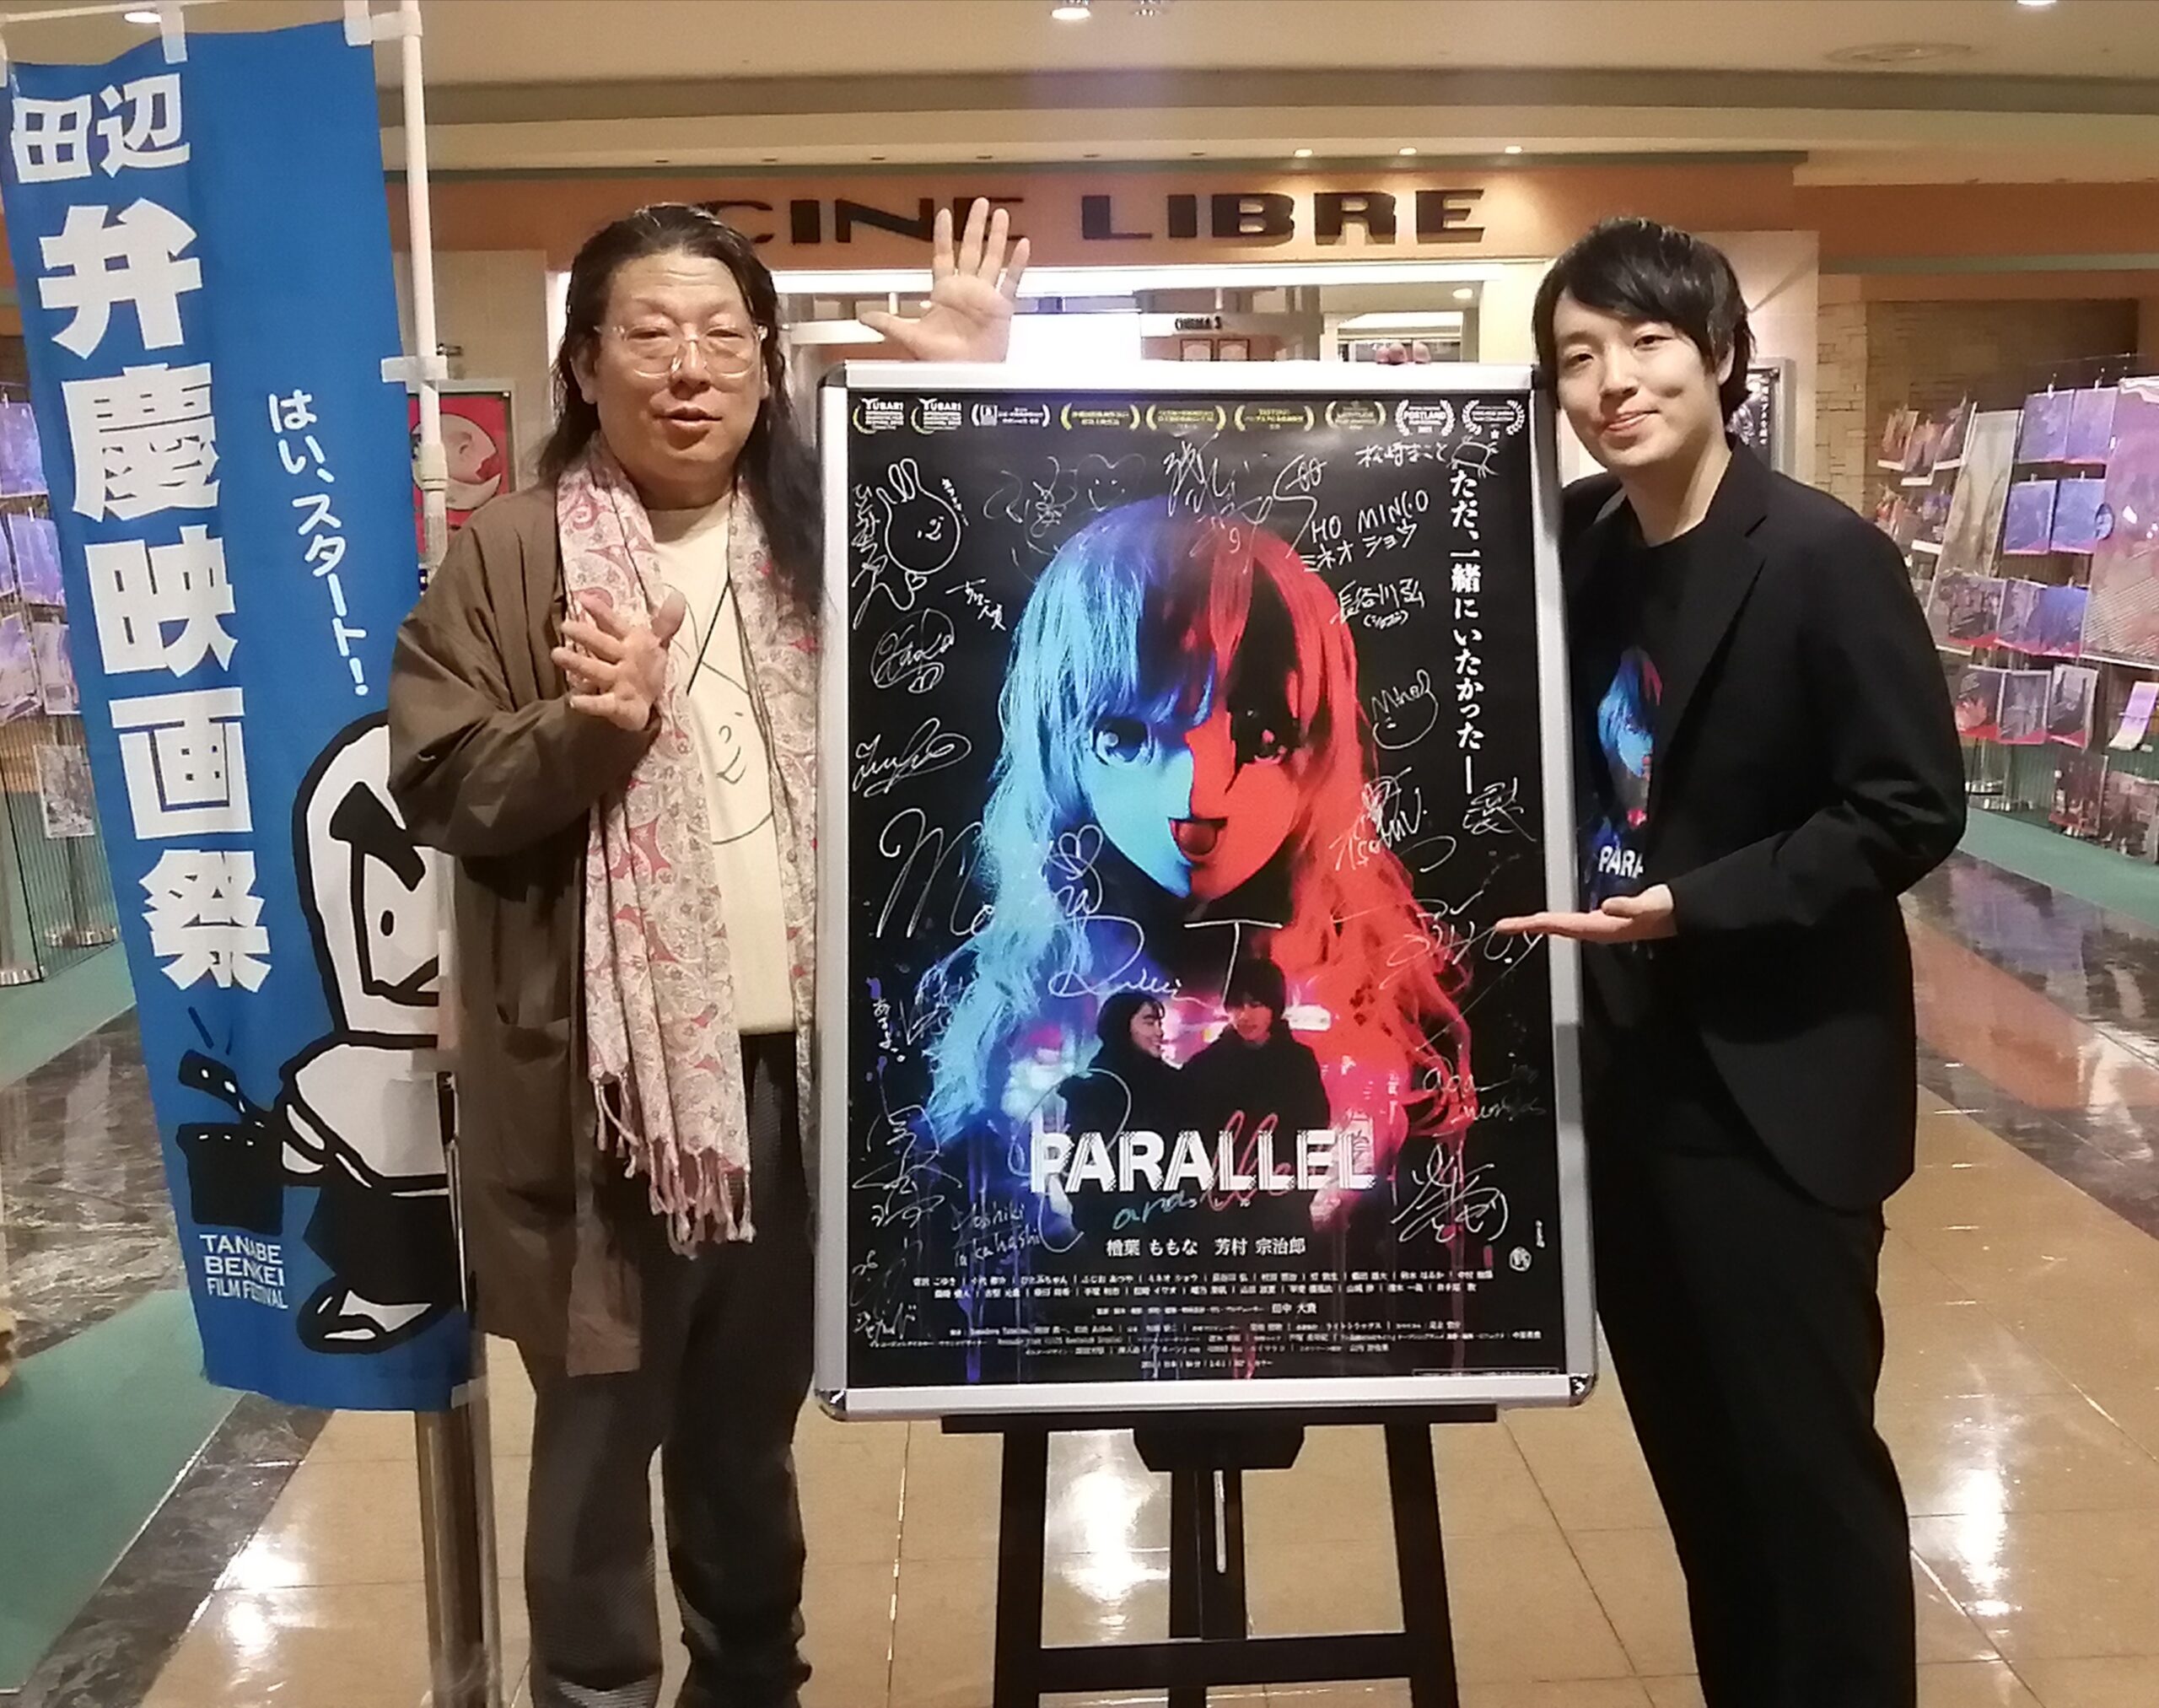 「演出に対する拘りは、随所にあります」10月18日(火)、シネ・リーブル梅田にて行われた映画『PARALLEL』の舞台挨拶レポート